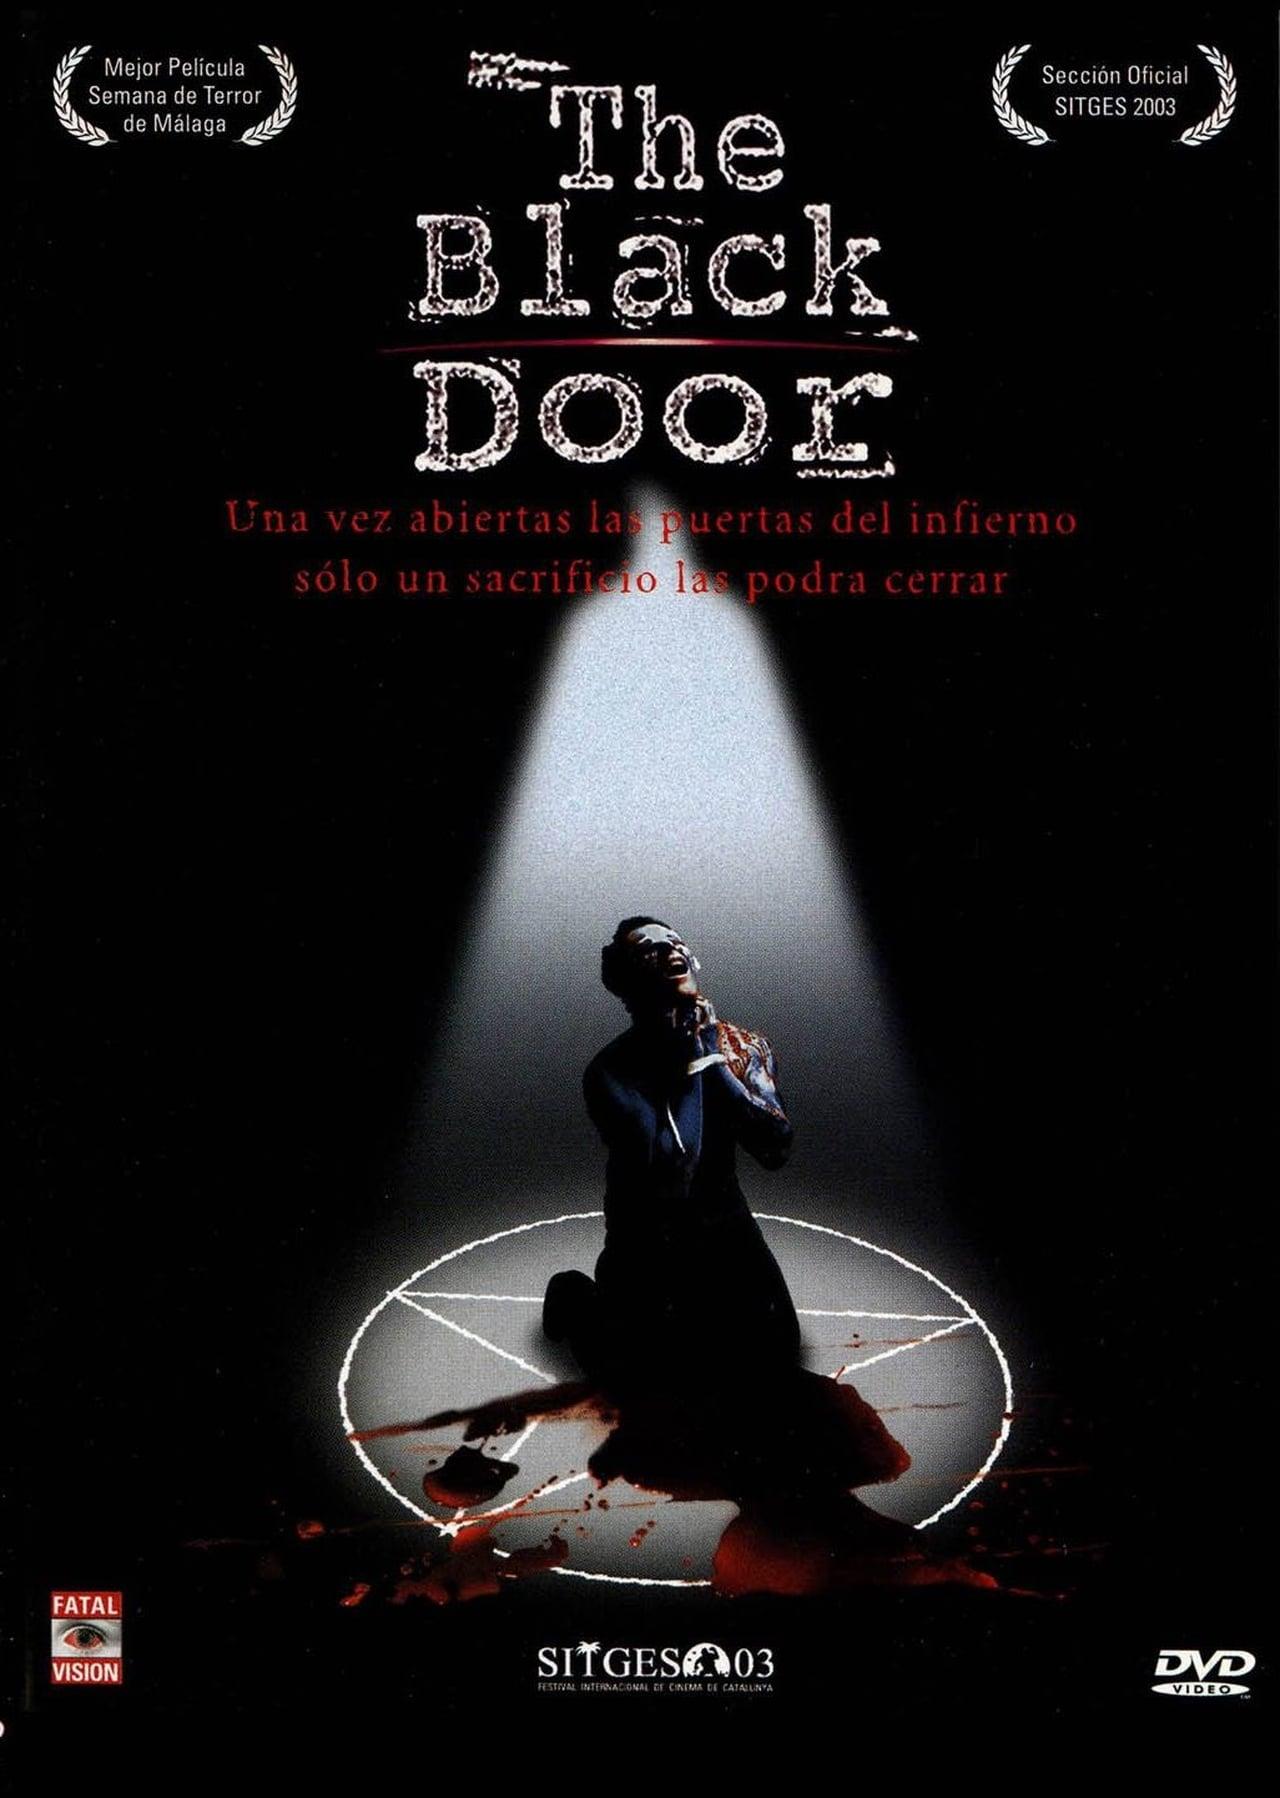 The Black Door poster